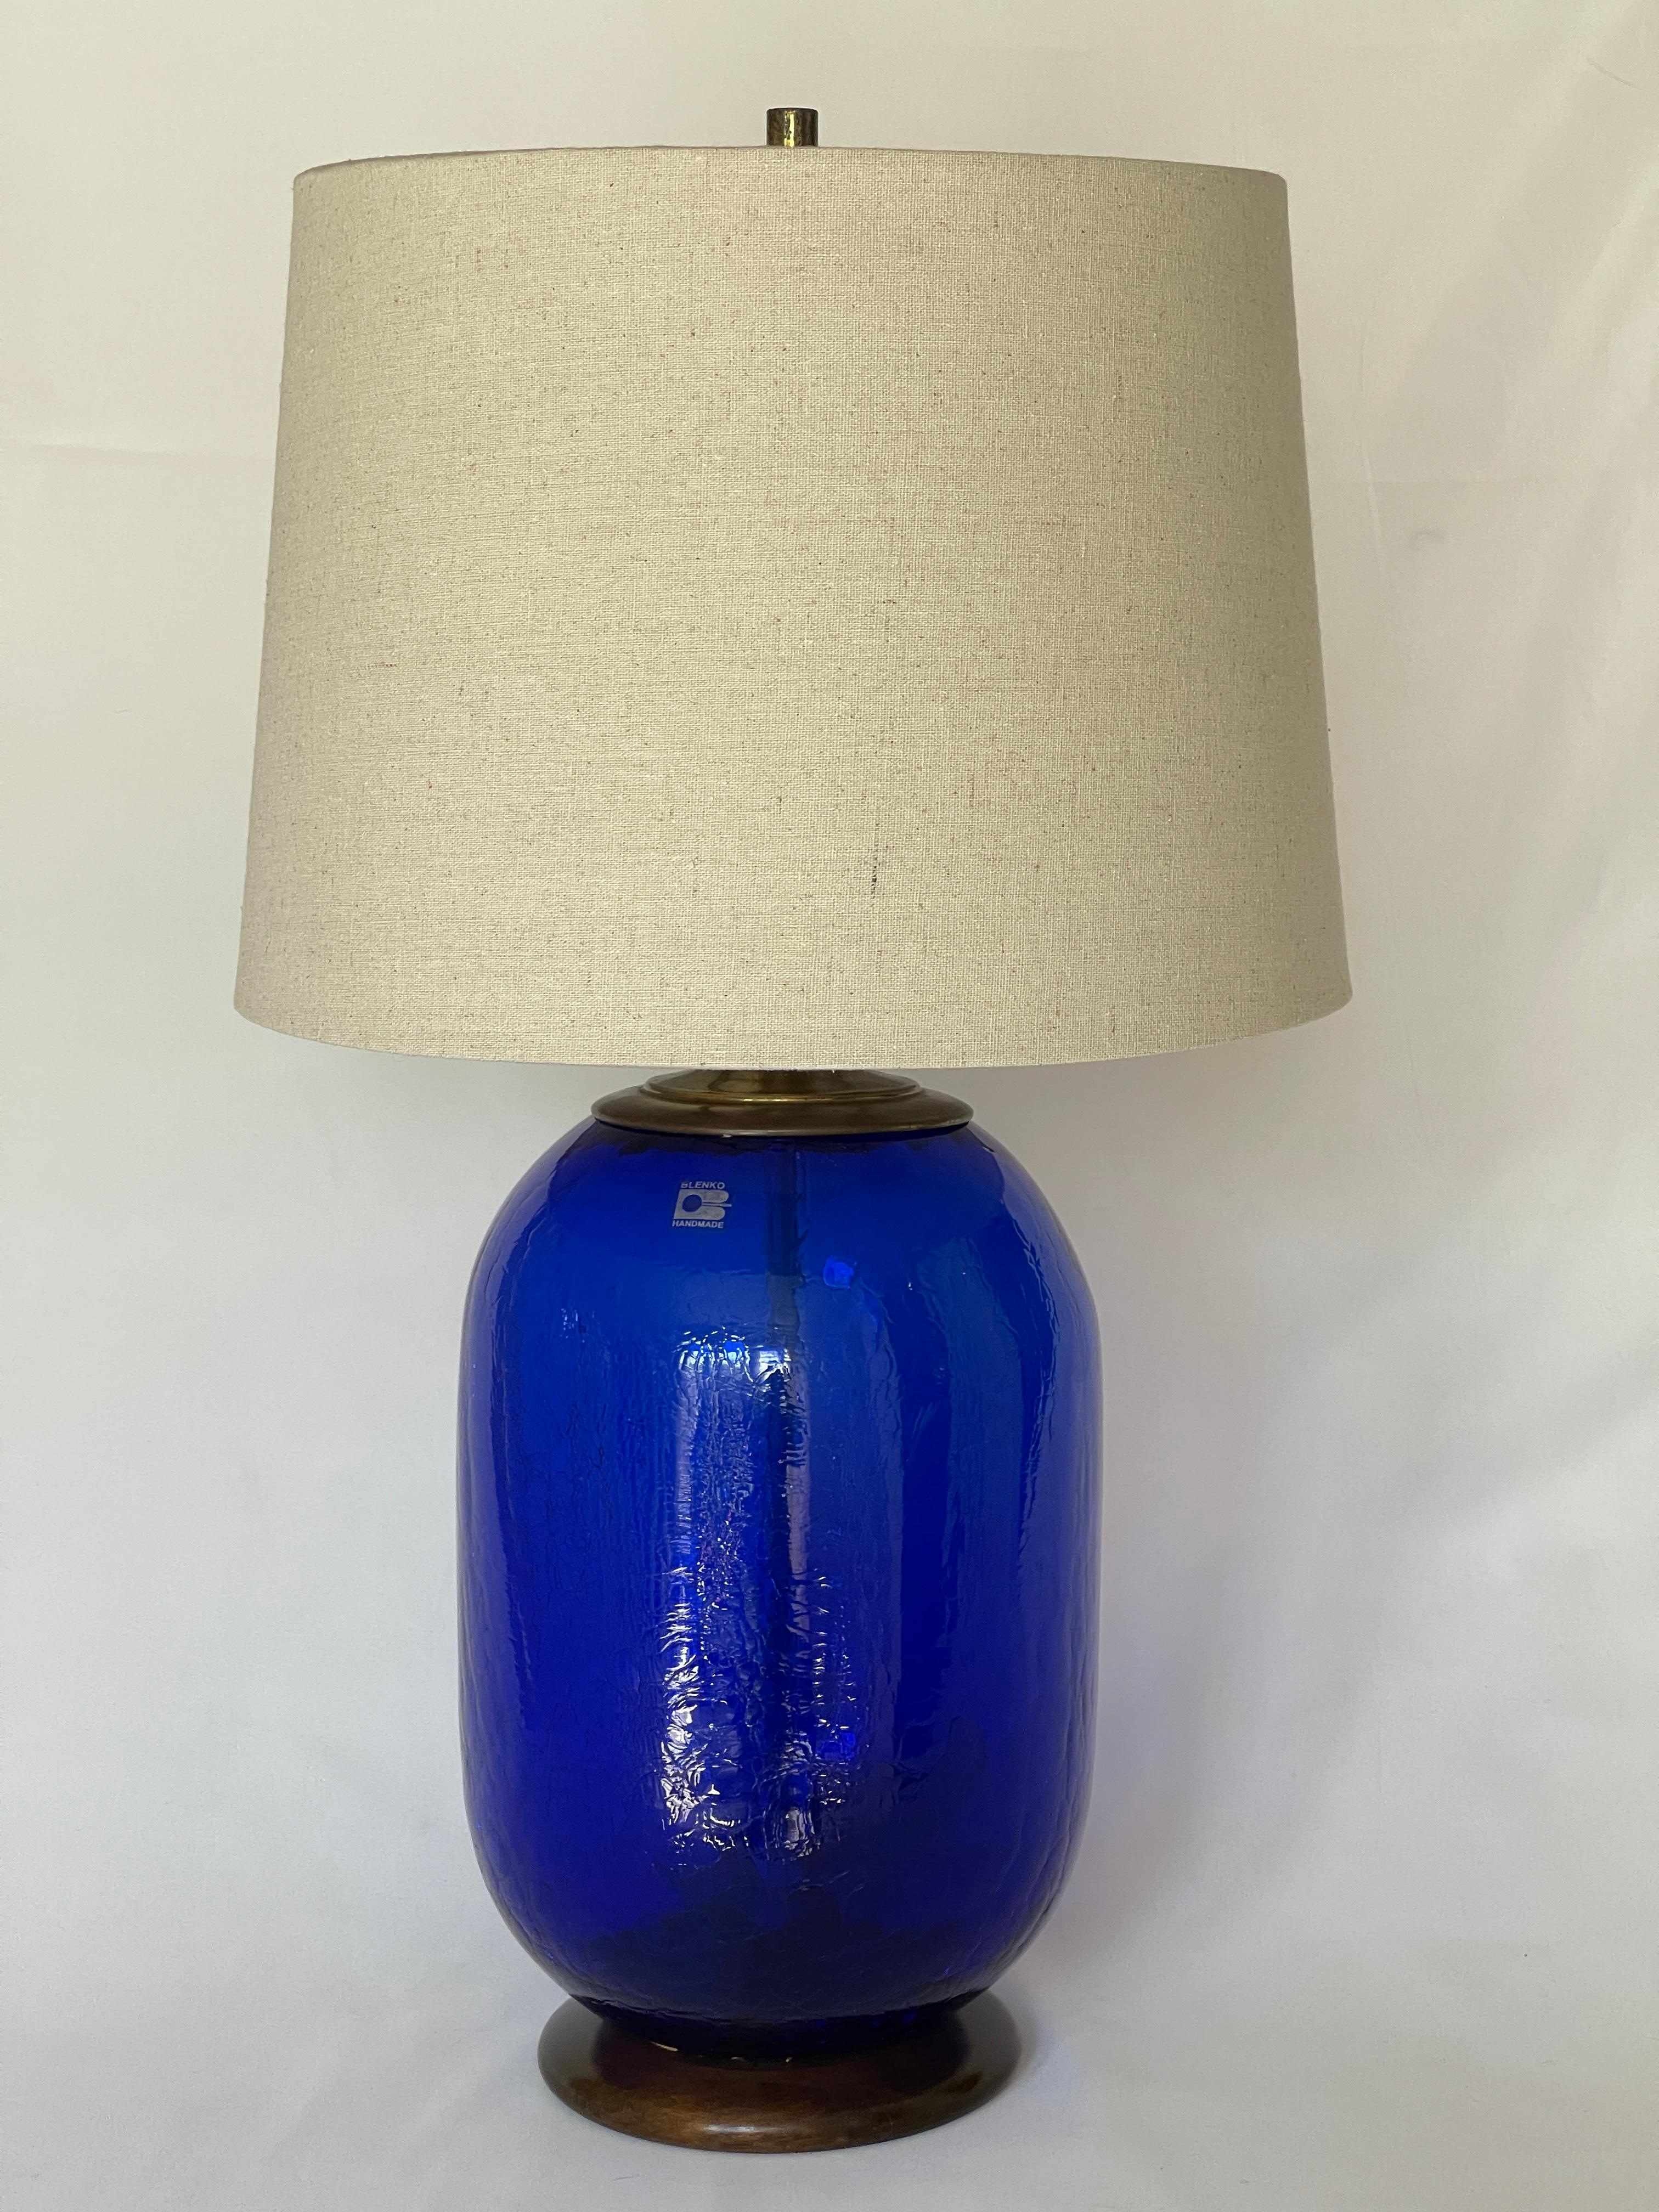 Blenko Signed Blue Crackled Glass Barrel Lamp For Sale 5